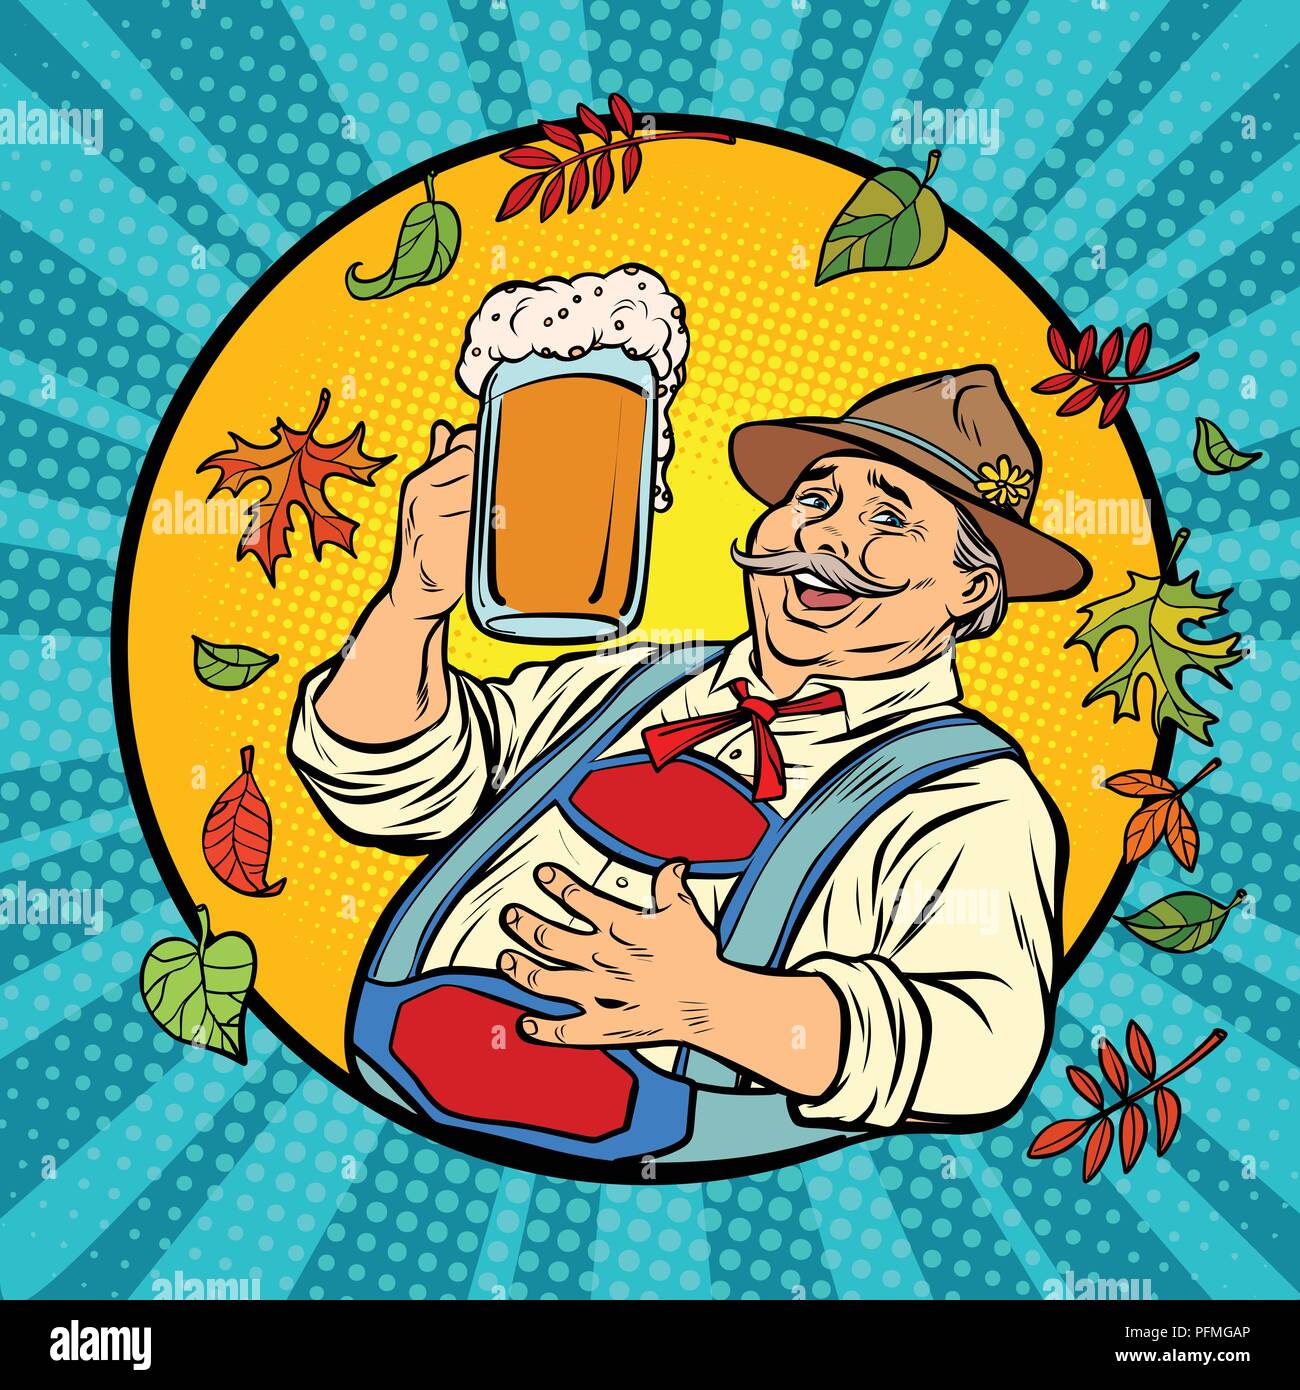 Oktoberfest Deutsch alter Mann mit Bier. Comic cartoon Pop Art retro Vektor illustration Zeichnung Stock Vektor